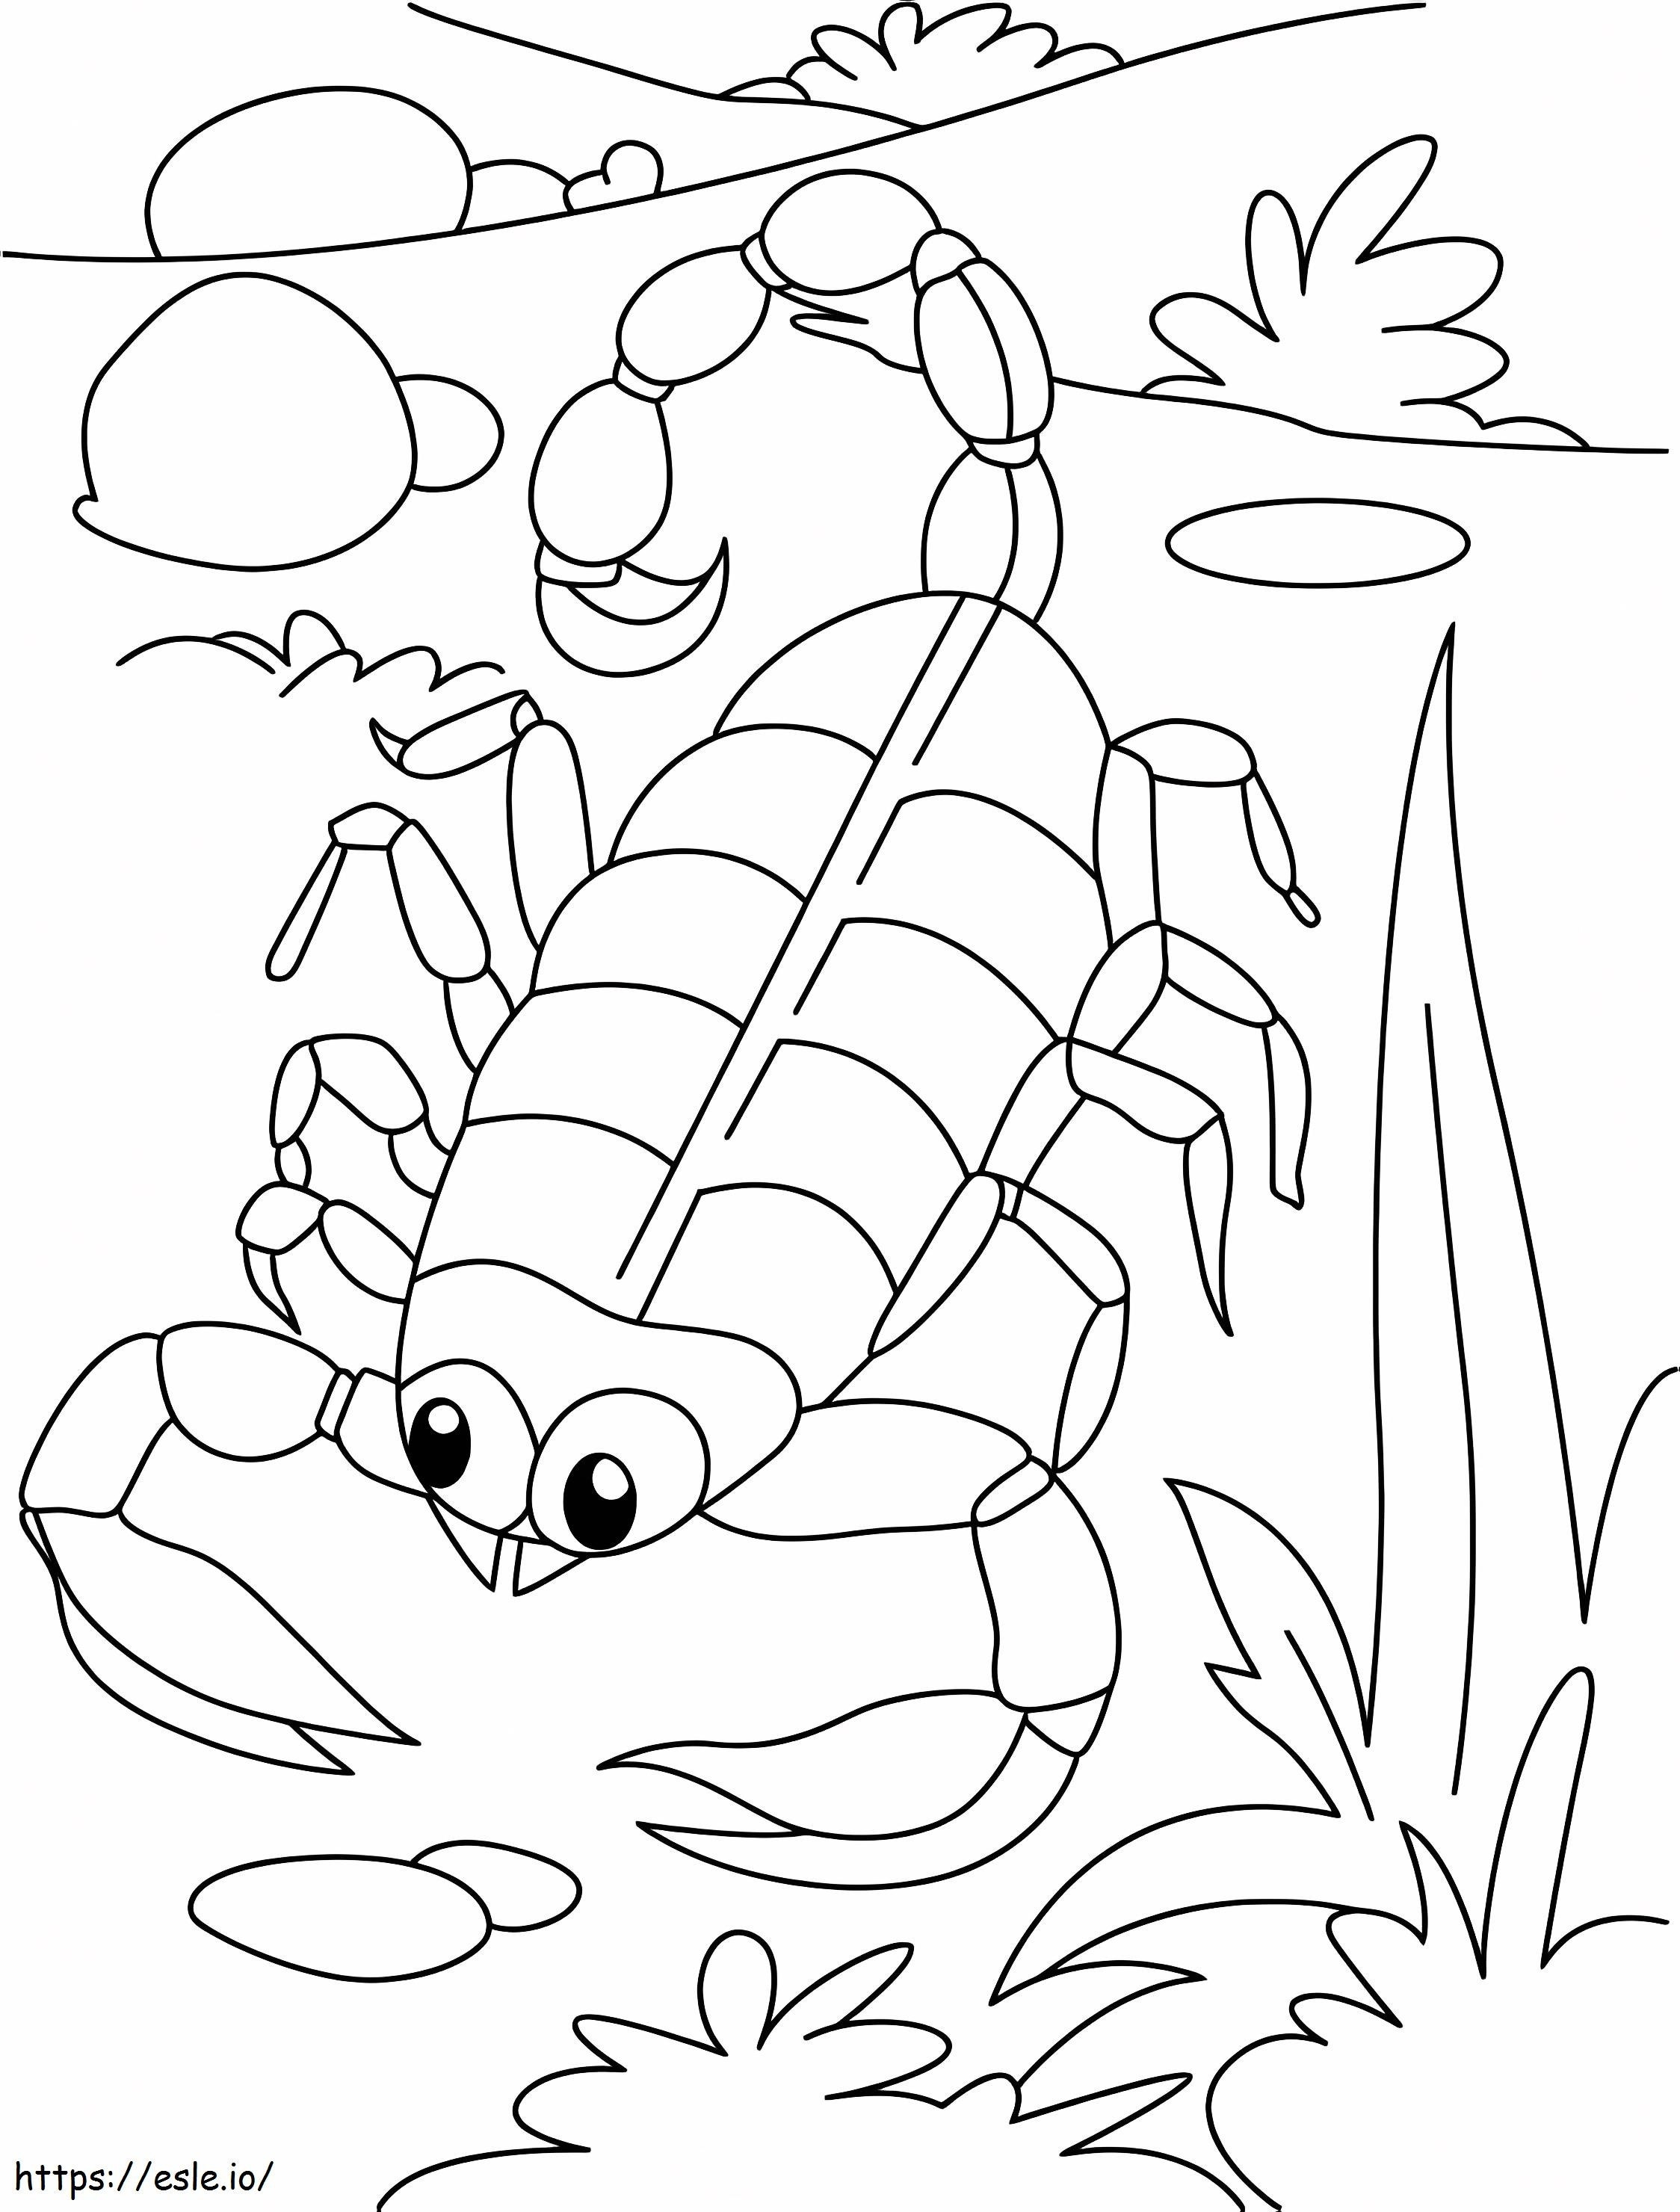 Coloriage Adorable scorpion à imprimer dessin